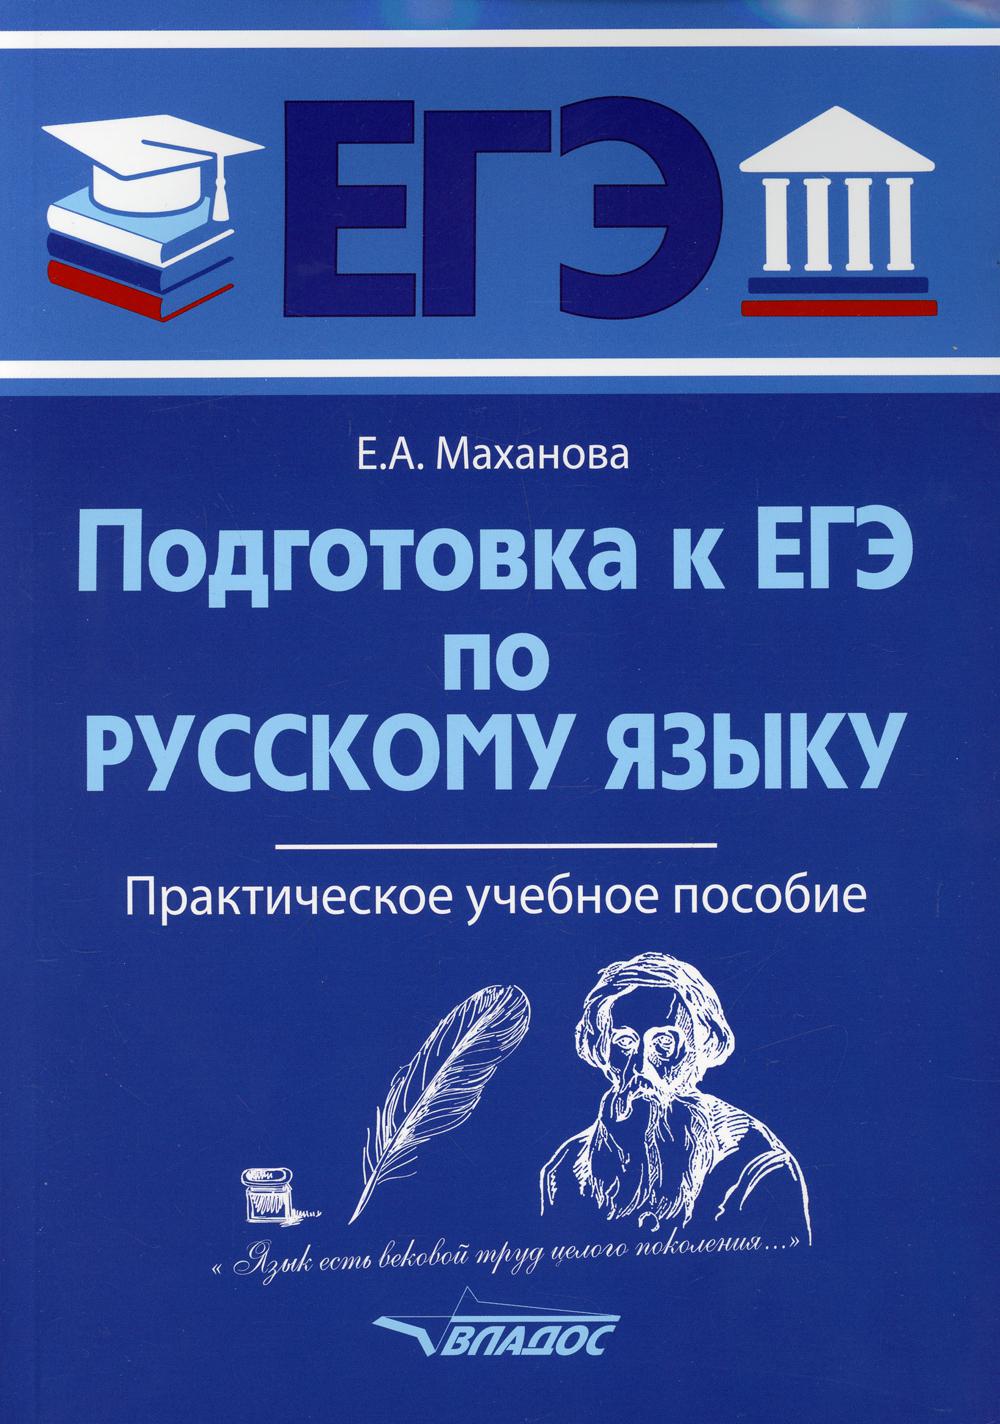 Подготовка к ЕГЭ по русскому языку: практическое учебное пособие